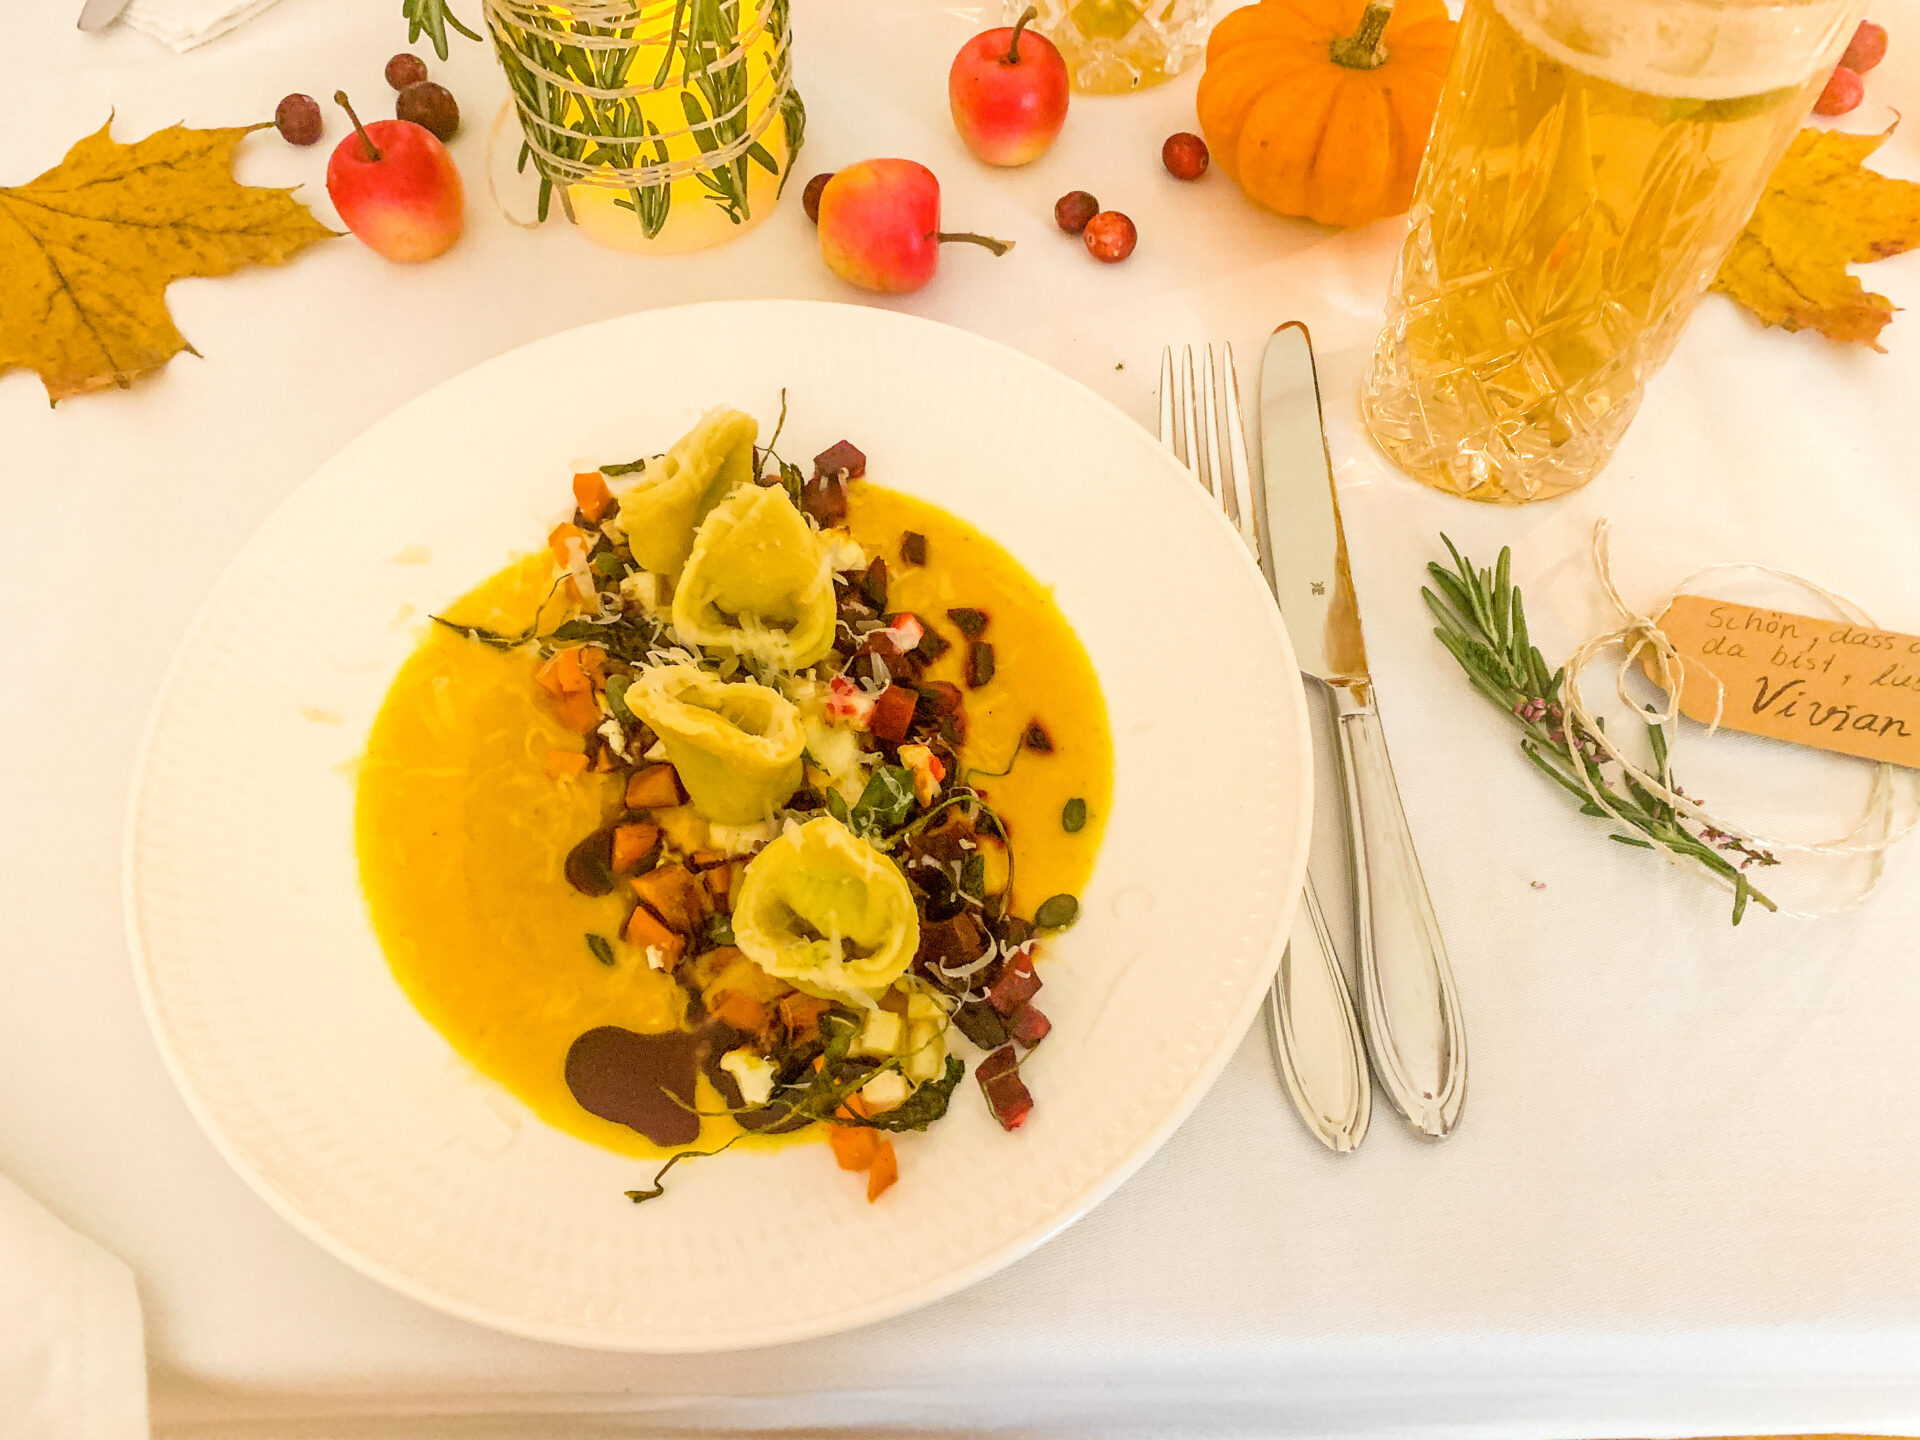 Das perfekte Dinner bei Freunden: Vegetarisches Herbstmenü mit 3 Gängen